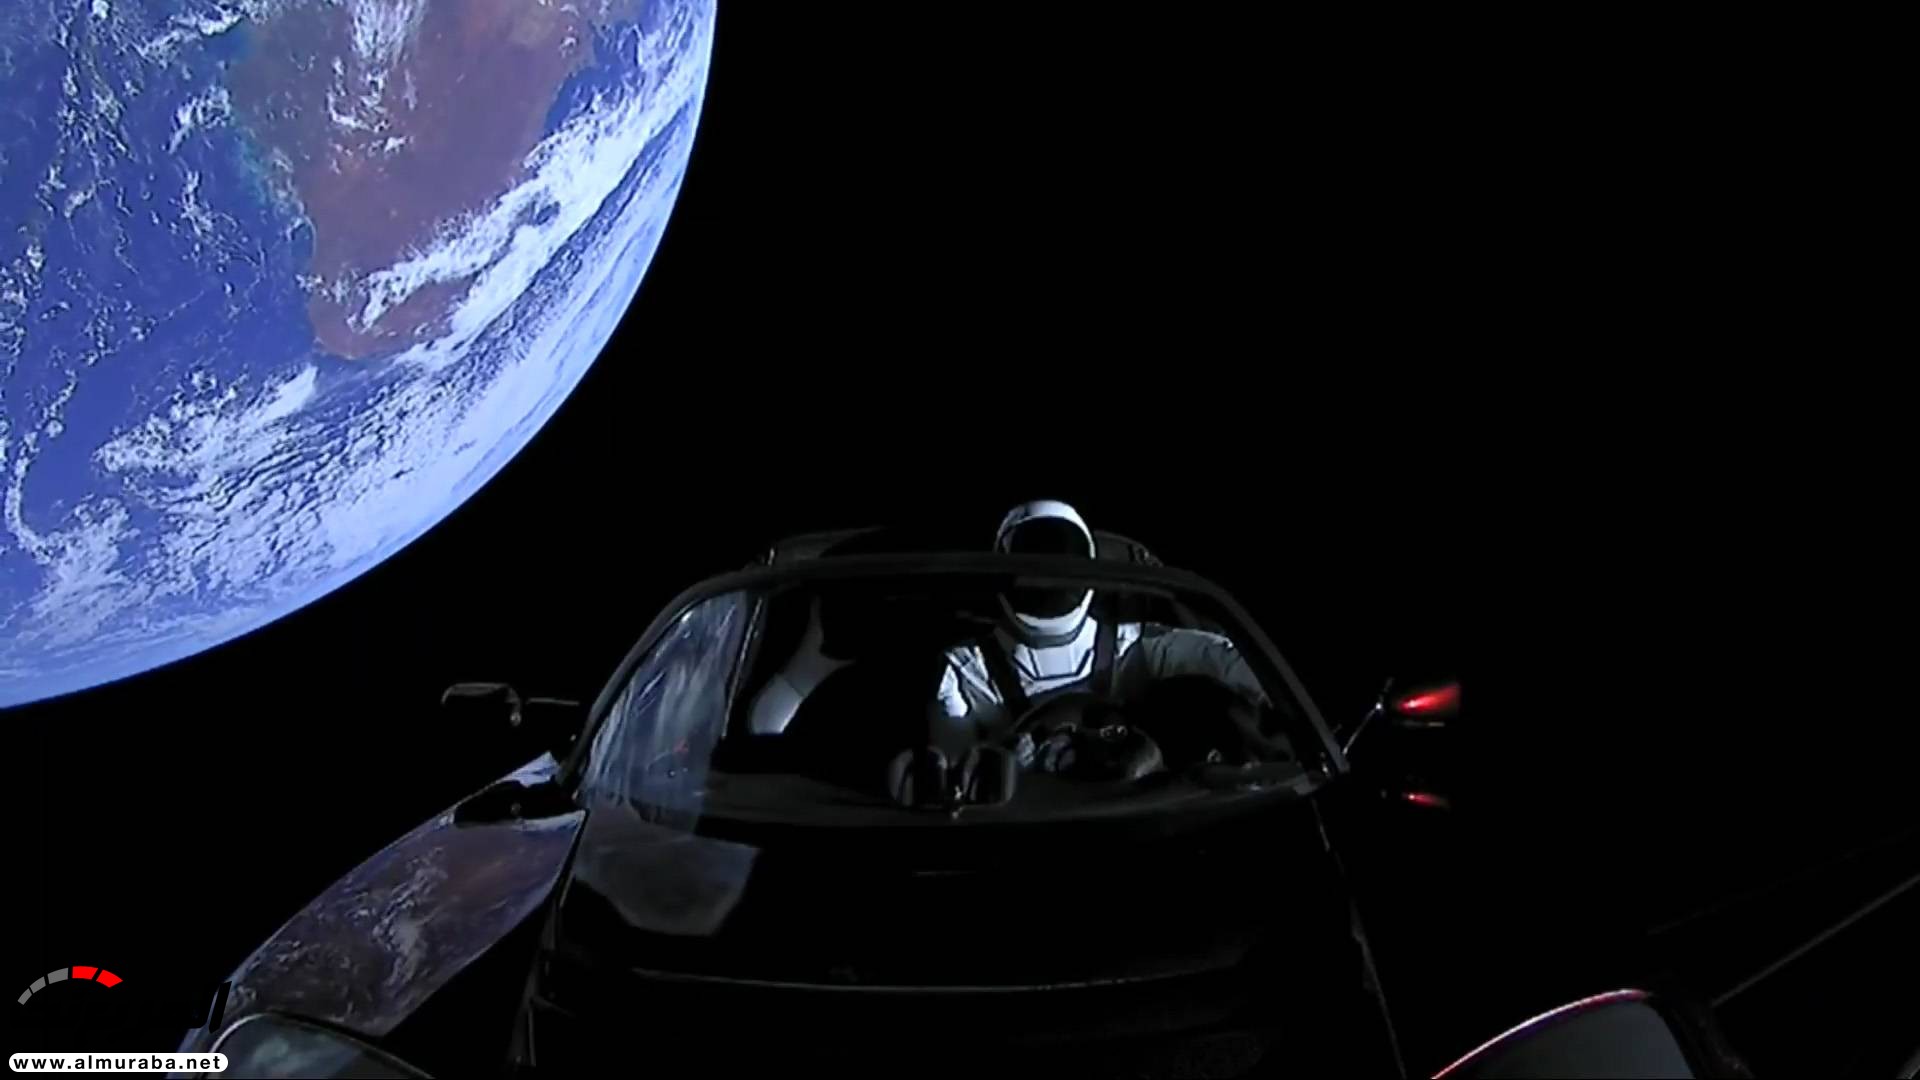 "بالفيديو والصور" إيلون ماسك يطلق تيسلا رودستر إلى المريخ في أقوى صاروخ بالعالم 12